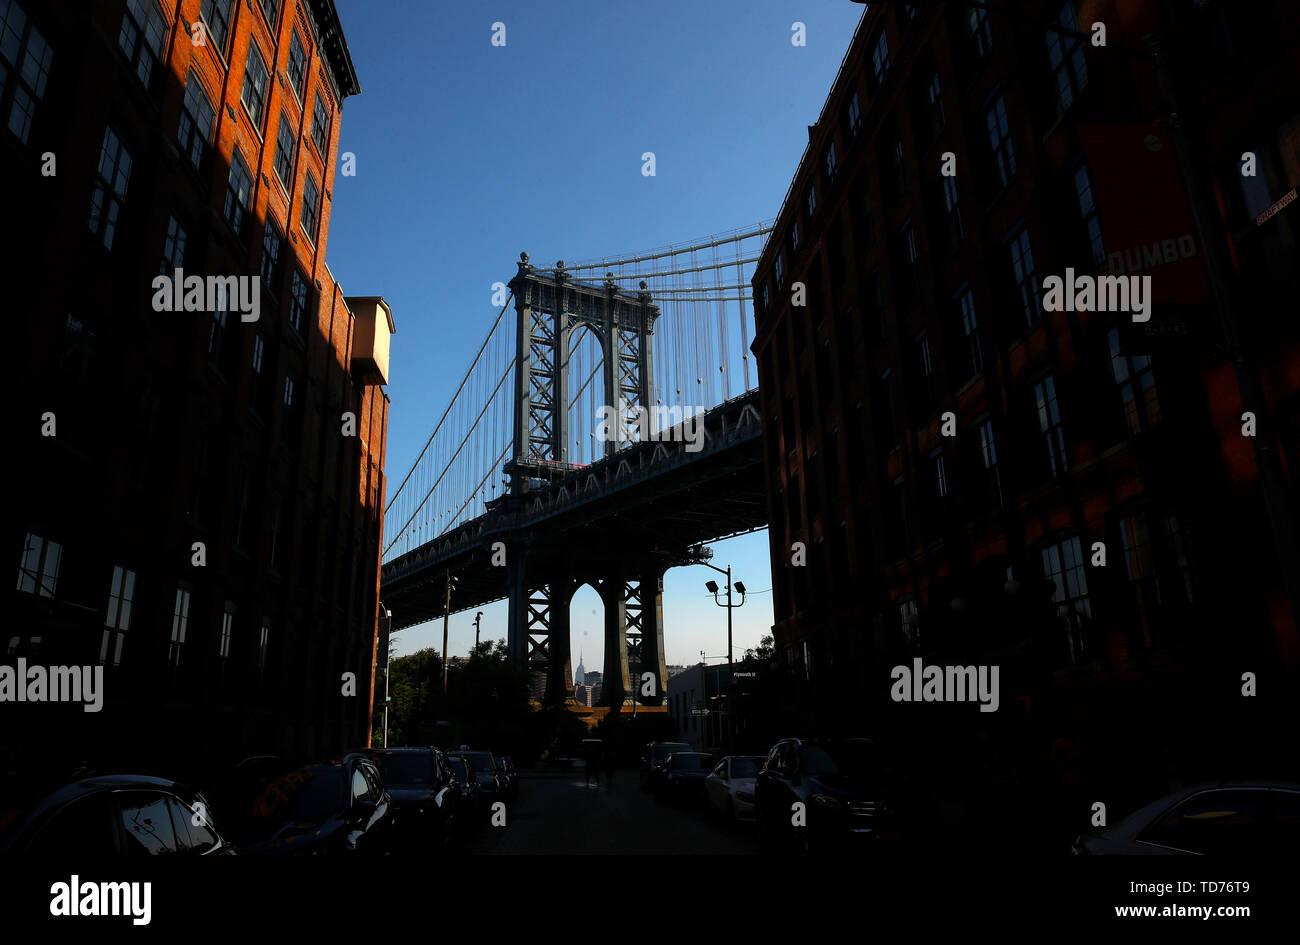 General view of the Manhattan Bridge from Dumbo, New York Stock Photo